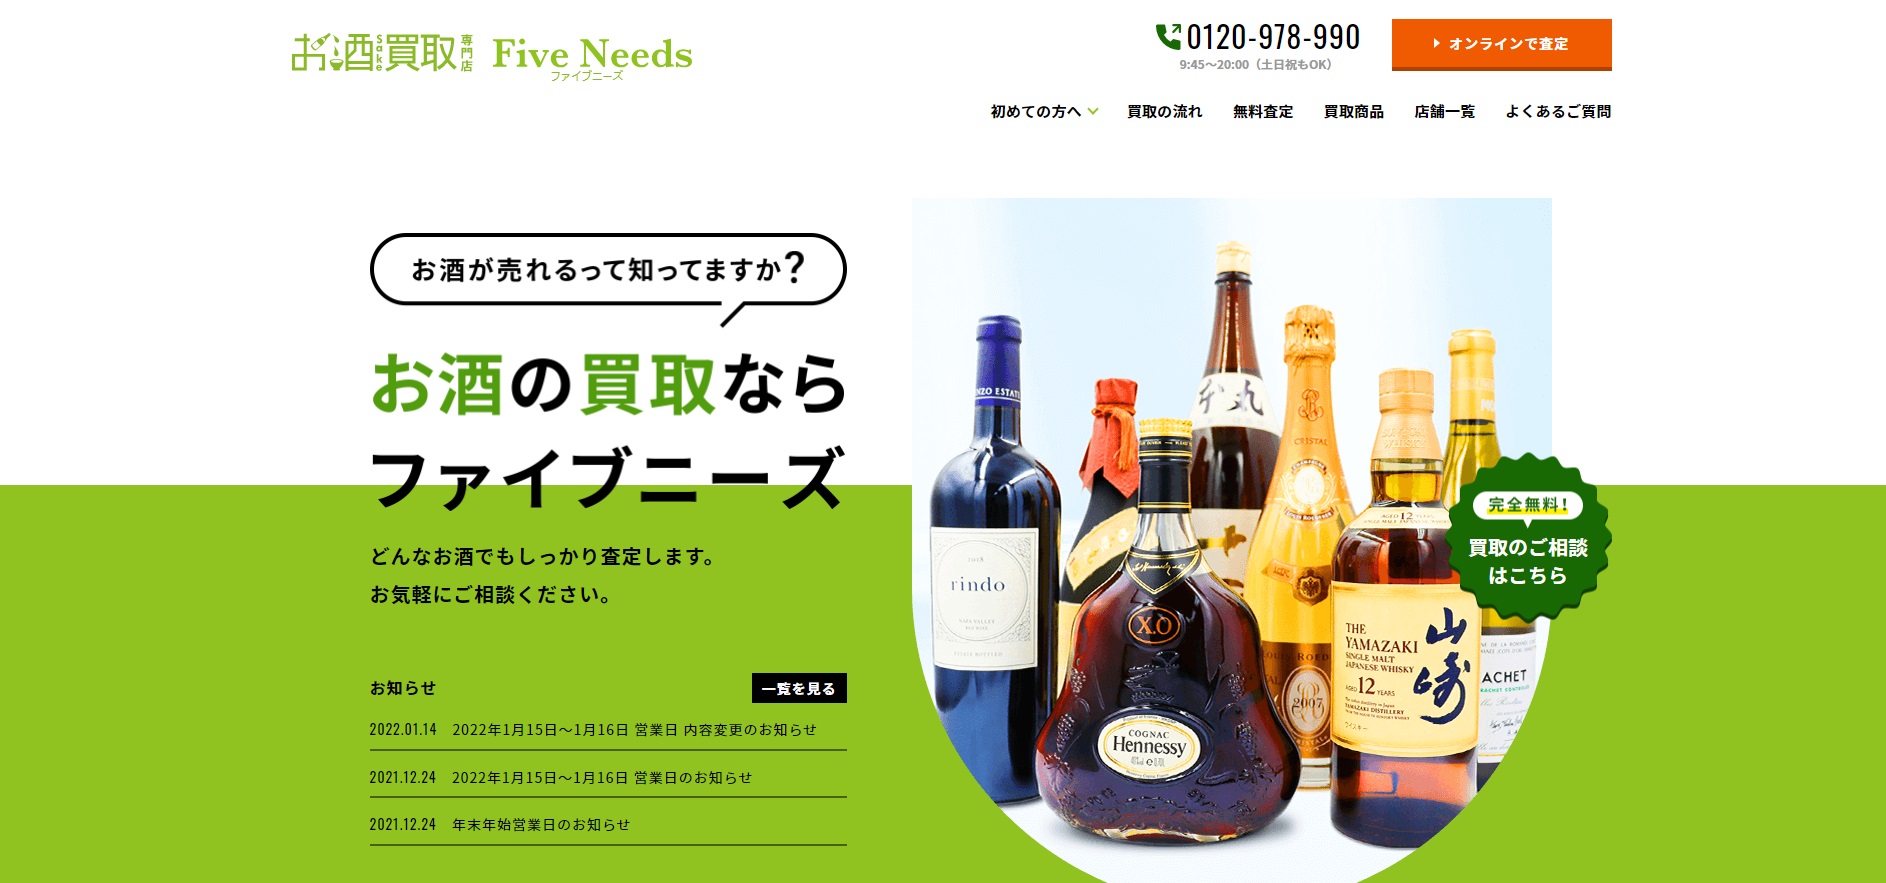 ワイン Five Needs